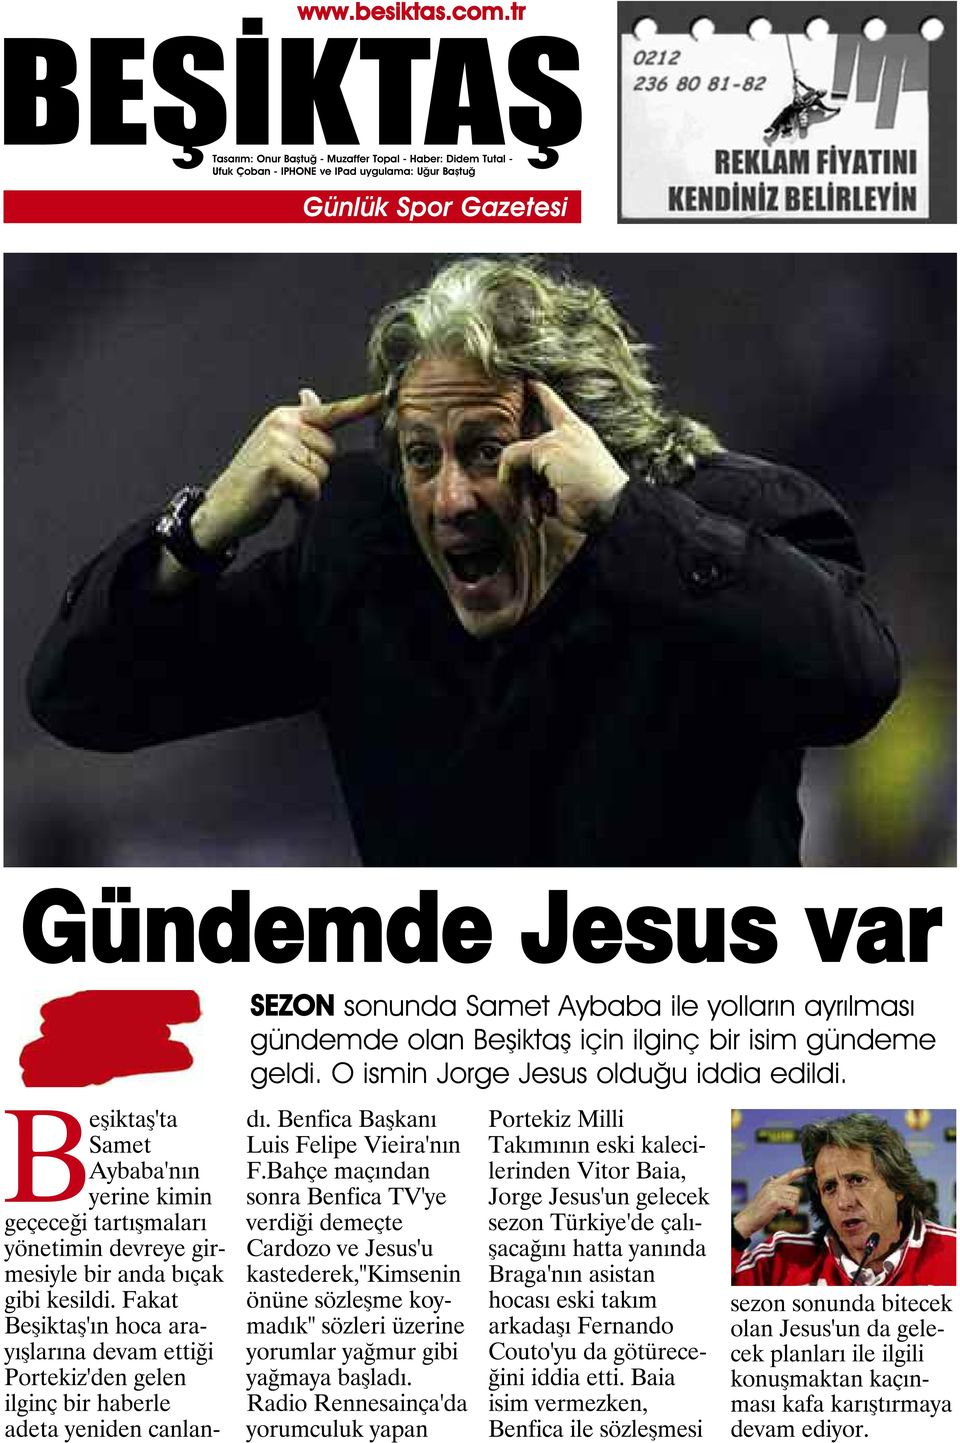 Fakat Beşiktaş'ın hoca arayışlarına devam ettiği Portekiz'den gelen ilginç bir haberle adeta yeniden canlandı. Benfica Başkanı Luis Felipe Vieira'nın F.